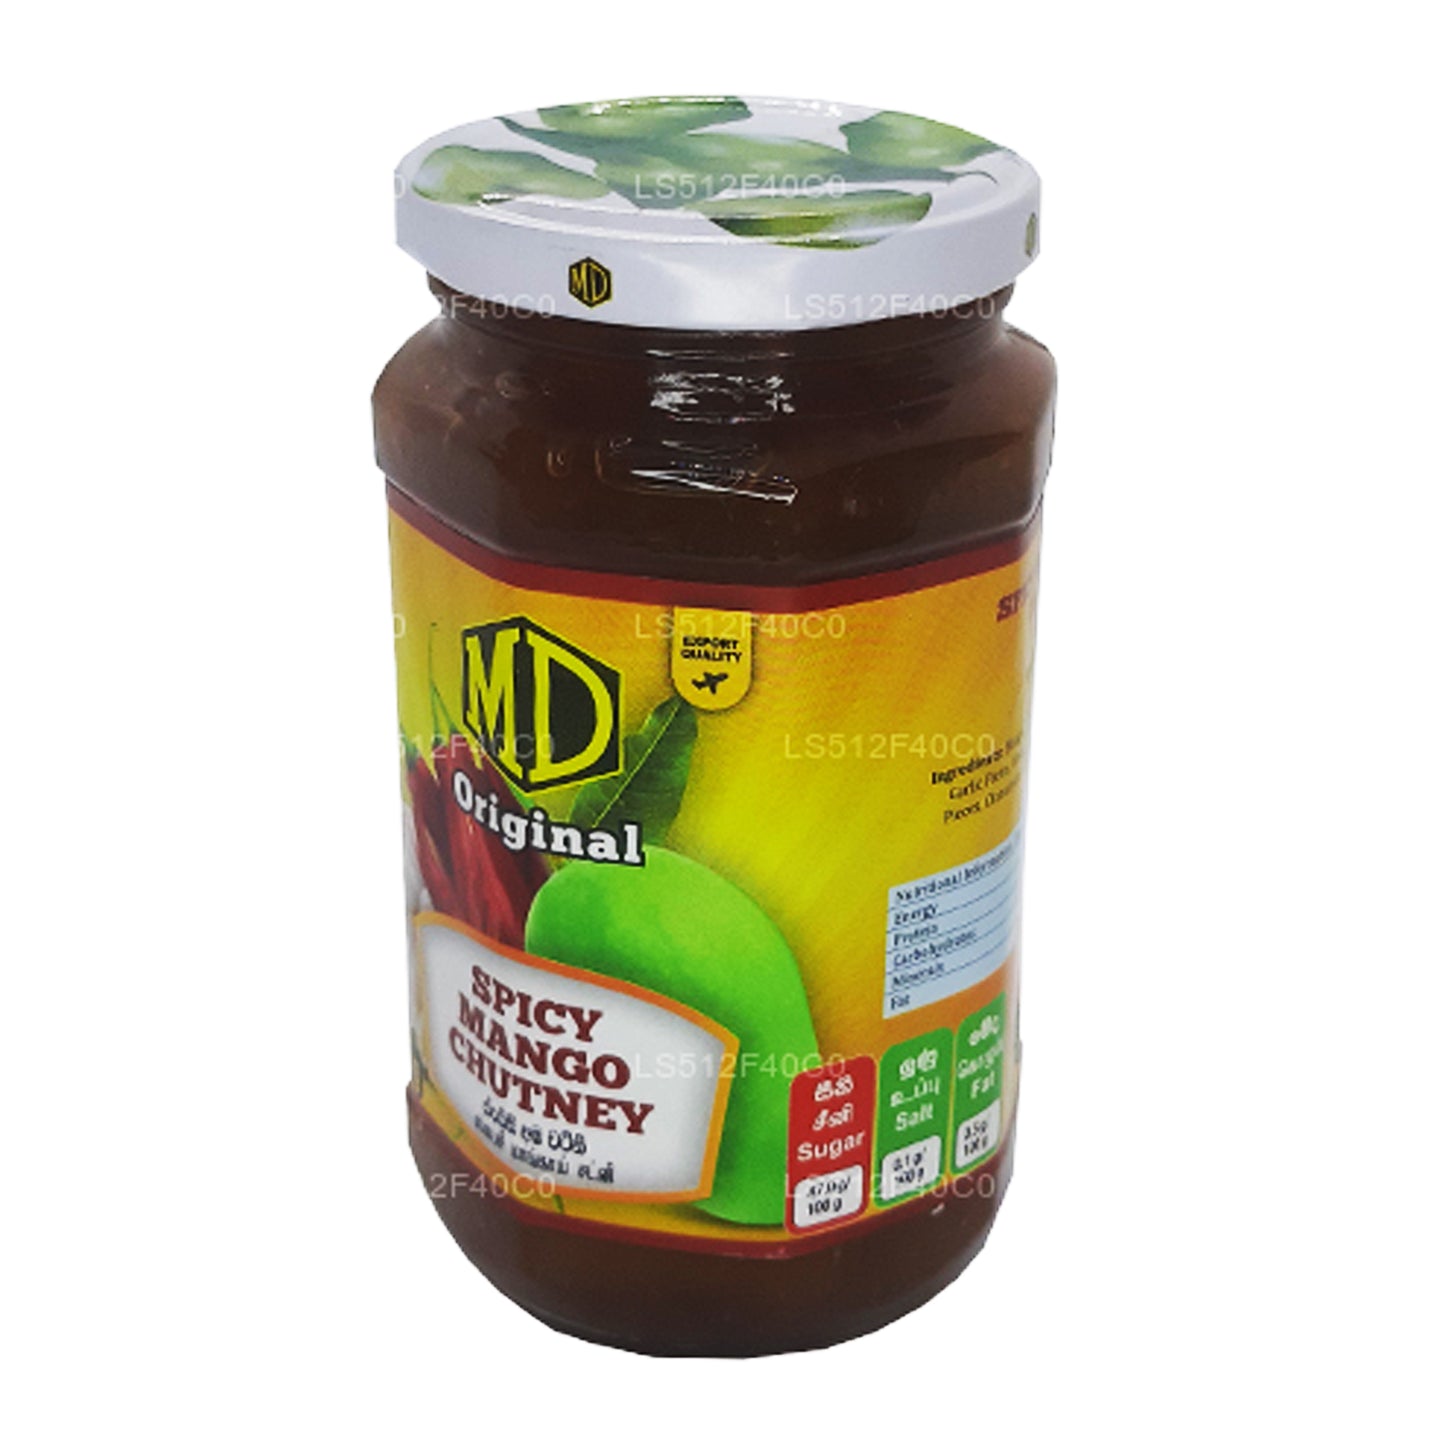 MD Würziges Mango-Chutney (500 g)